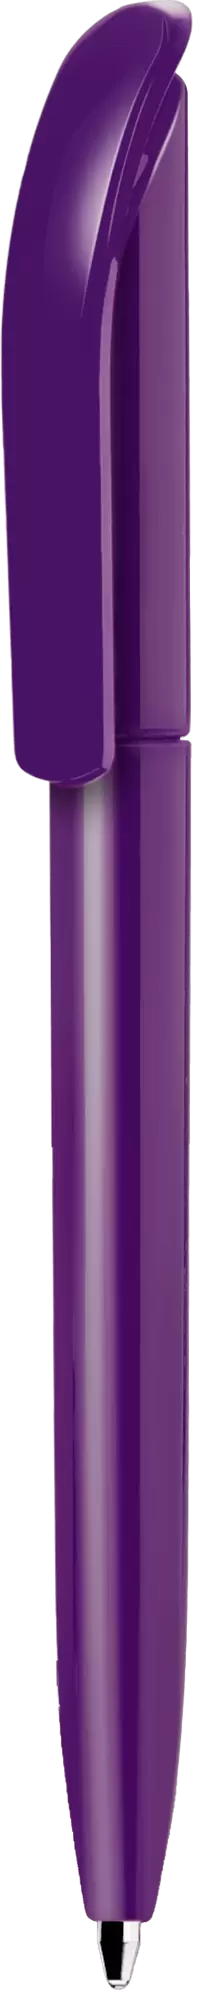 Ручка VIVALDI COLOR Фиолетовая 1336-11